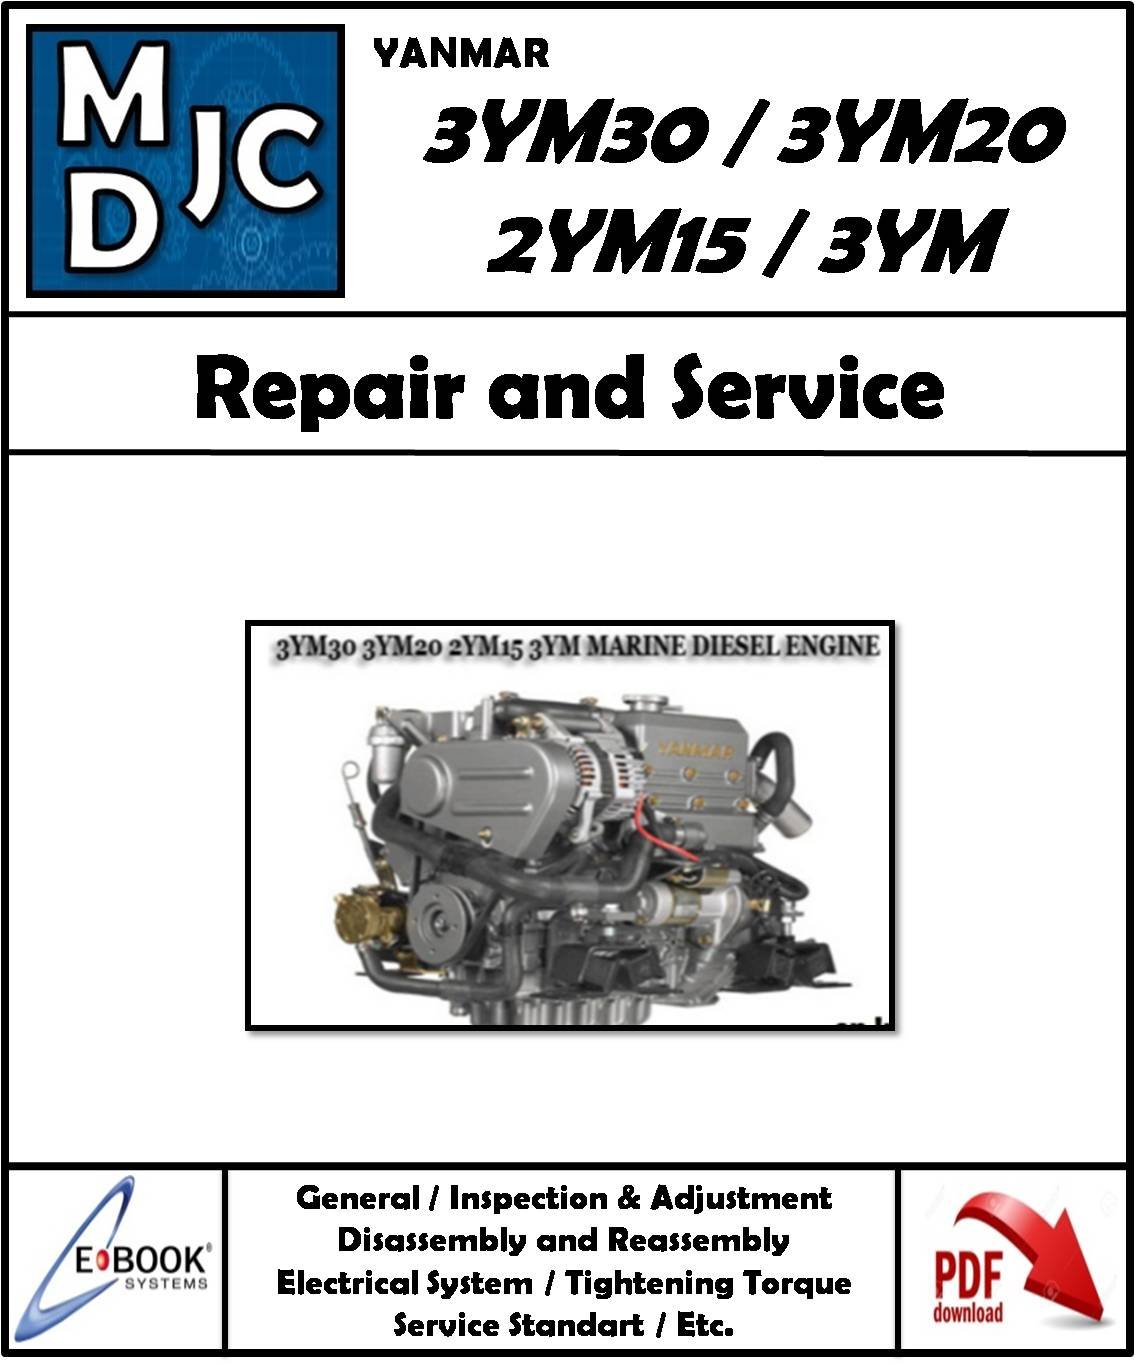 YANMAR Motores Diesel manuales De Servicio